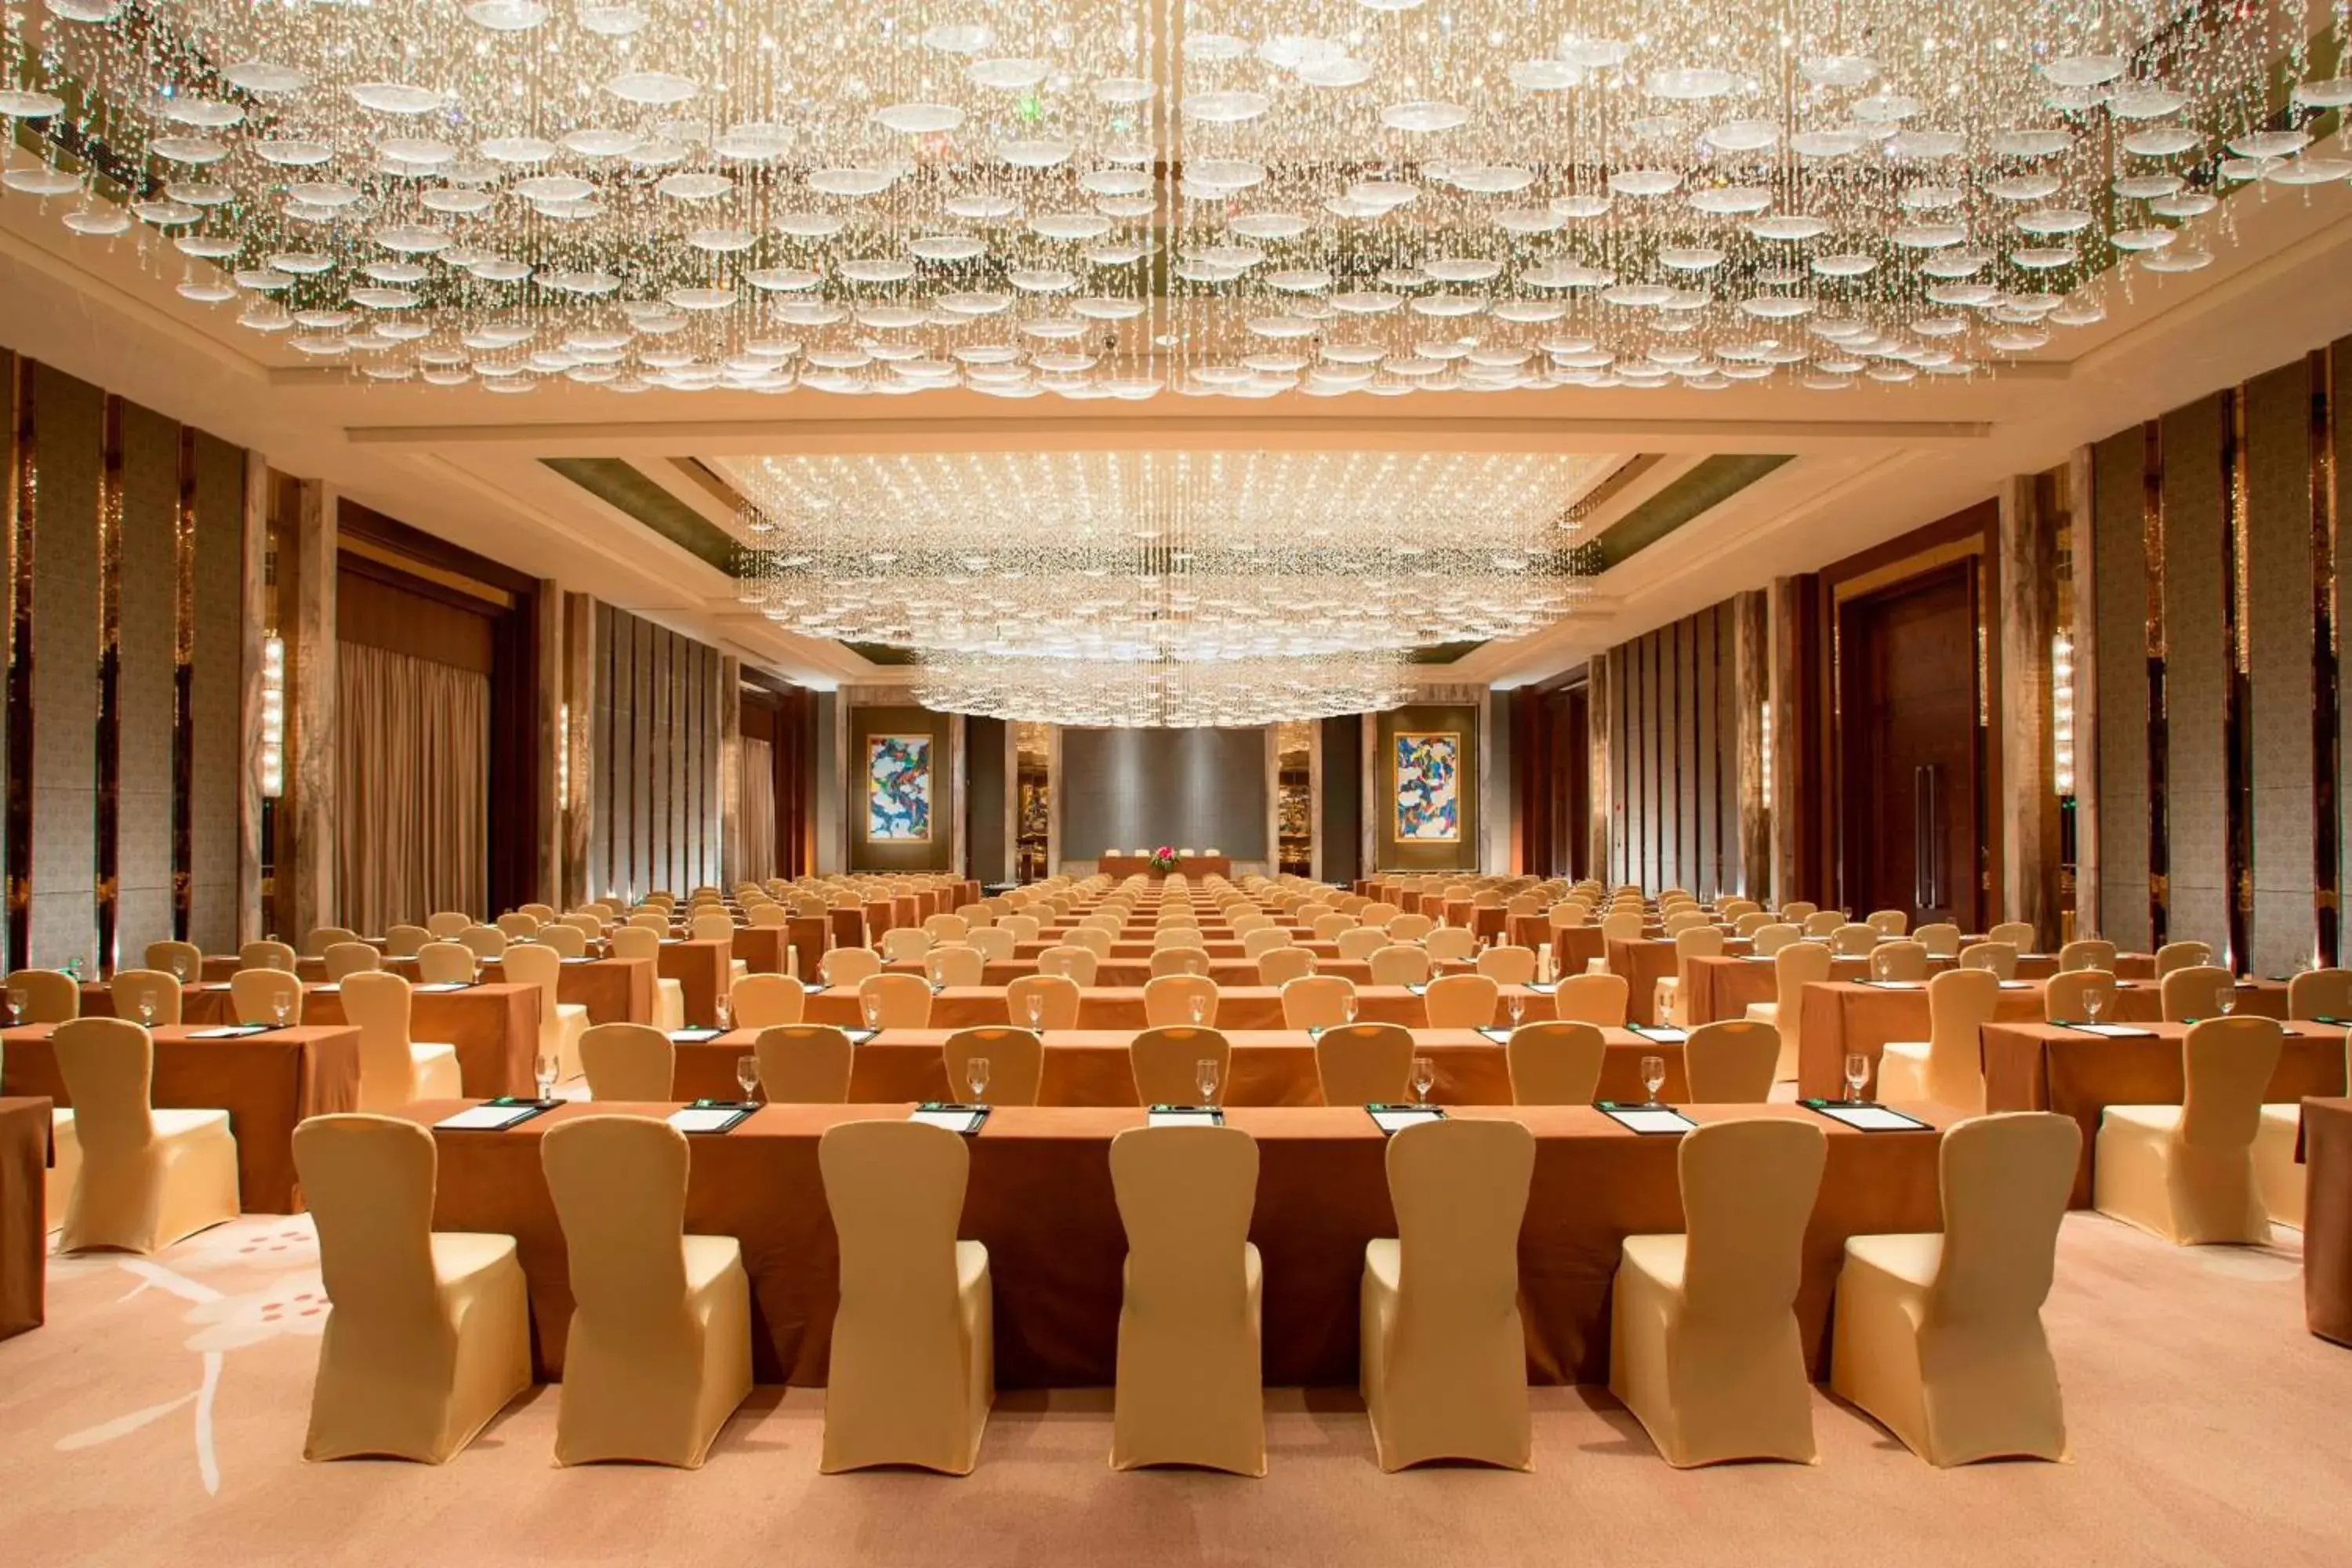 Meeting/conference room, Banquet Facilities in Sheraton Bailuhu Resort, Huizhou